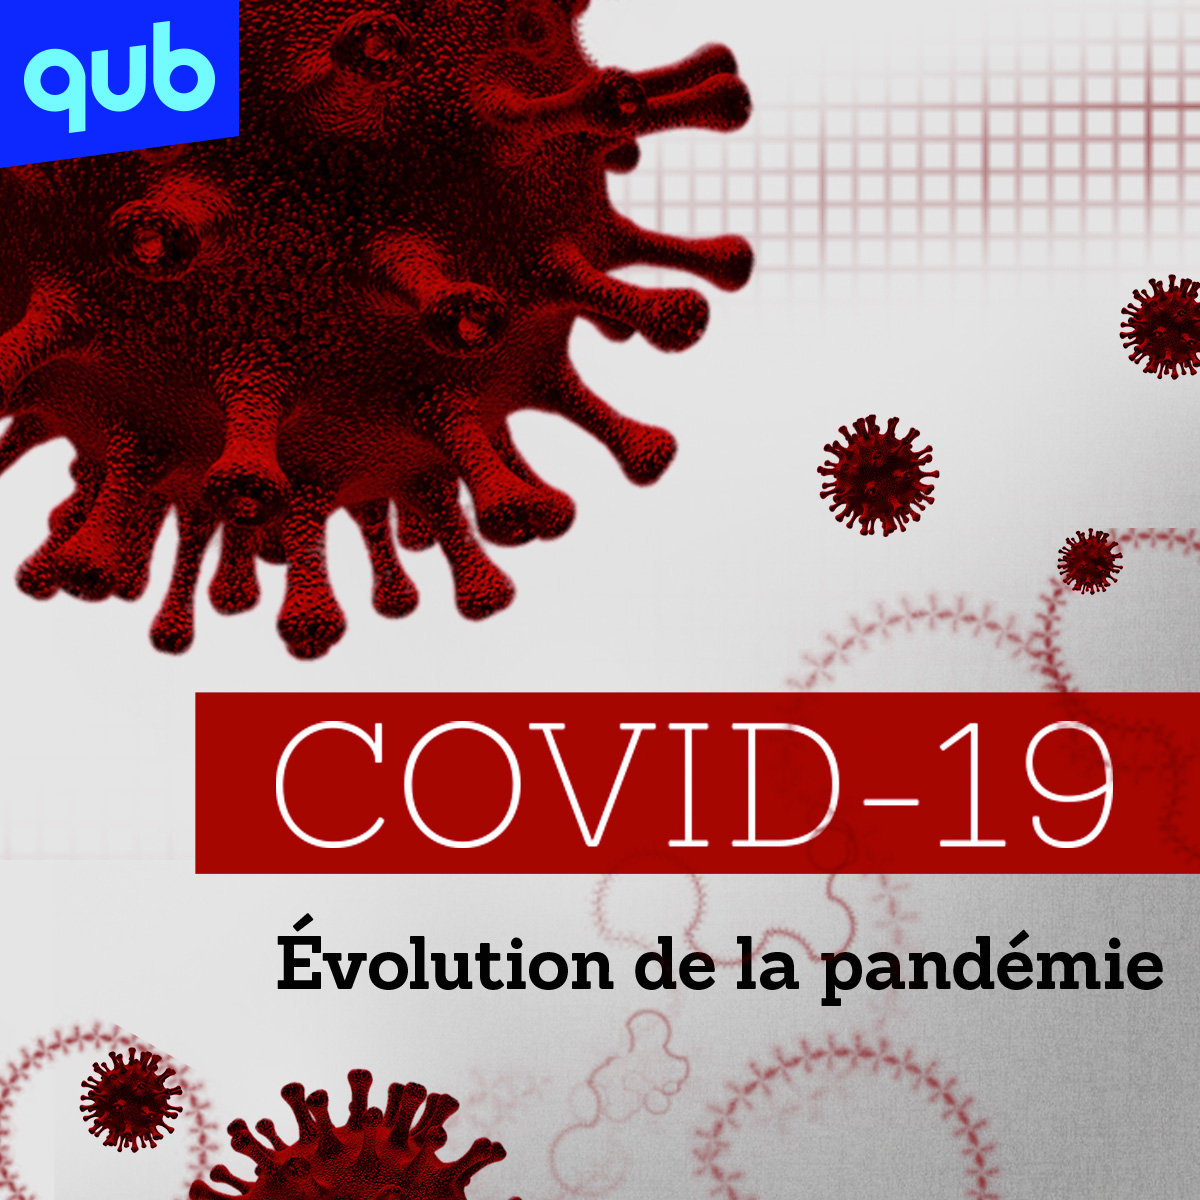 COVID-19 : «je pense qu’on manque beaucoup de transparence au niveau des données ici surtout au Québec»